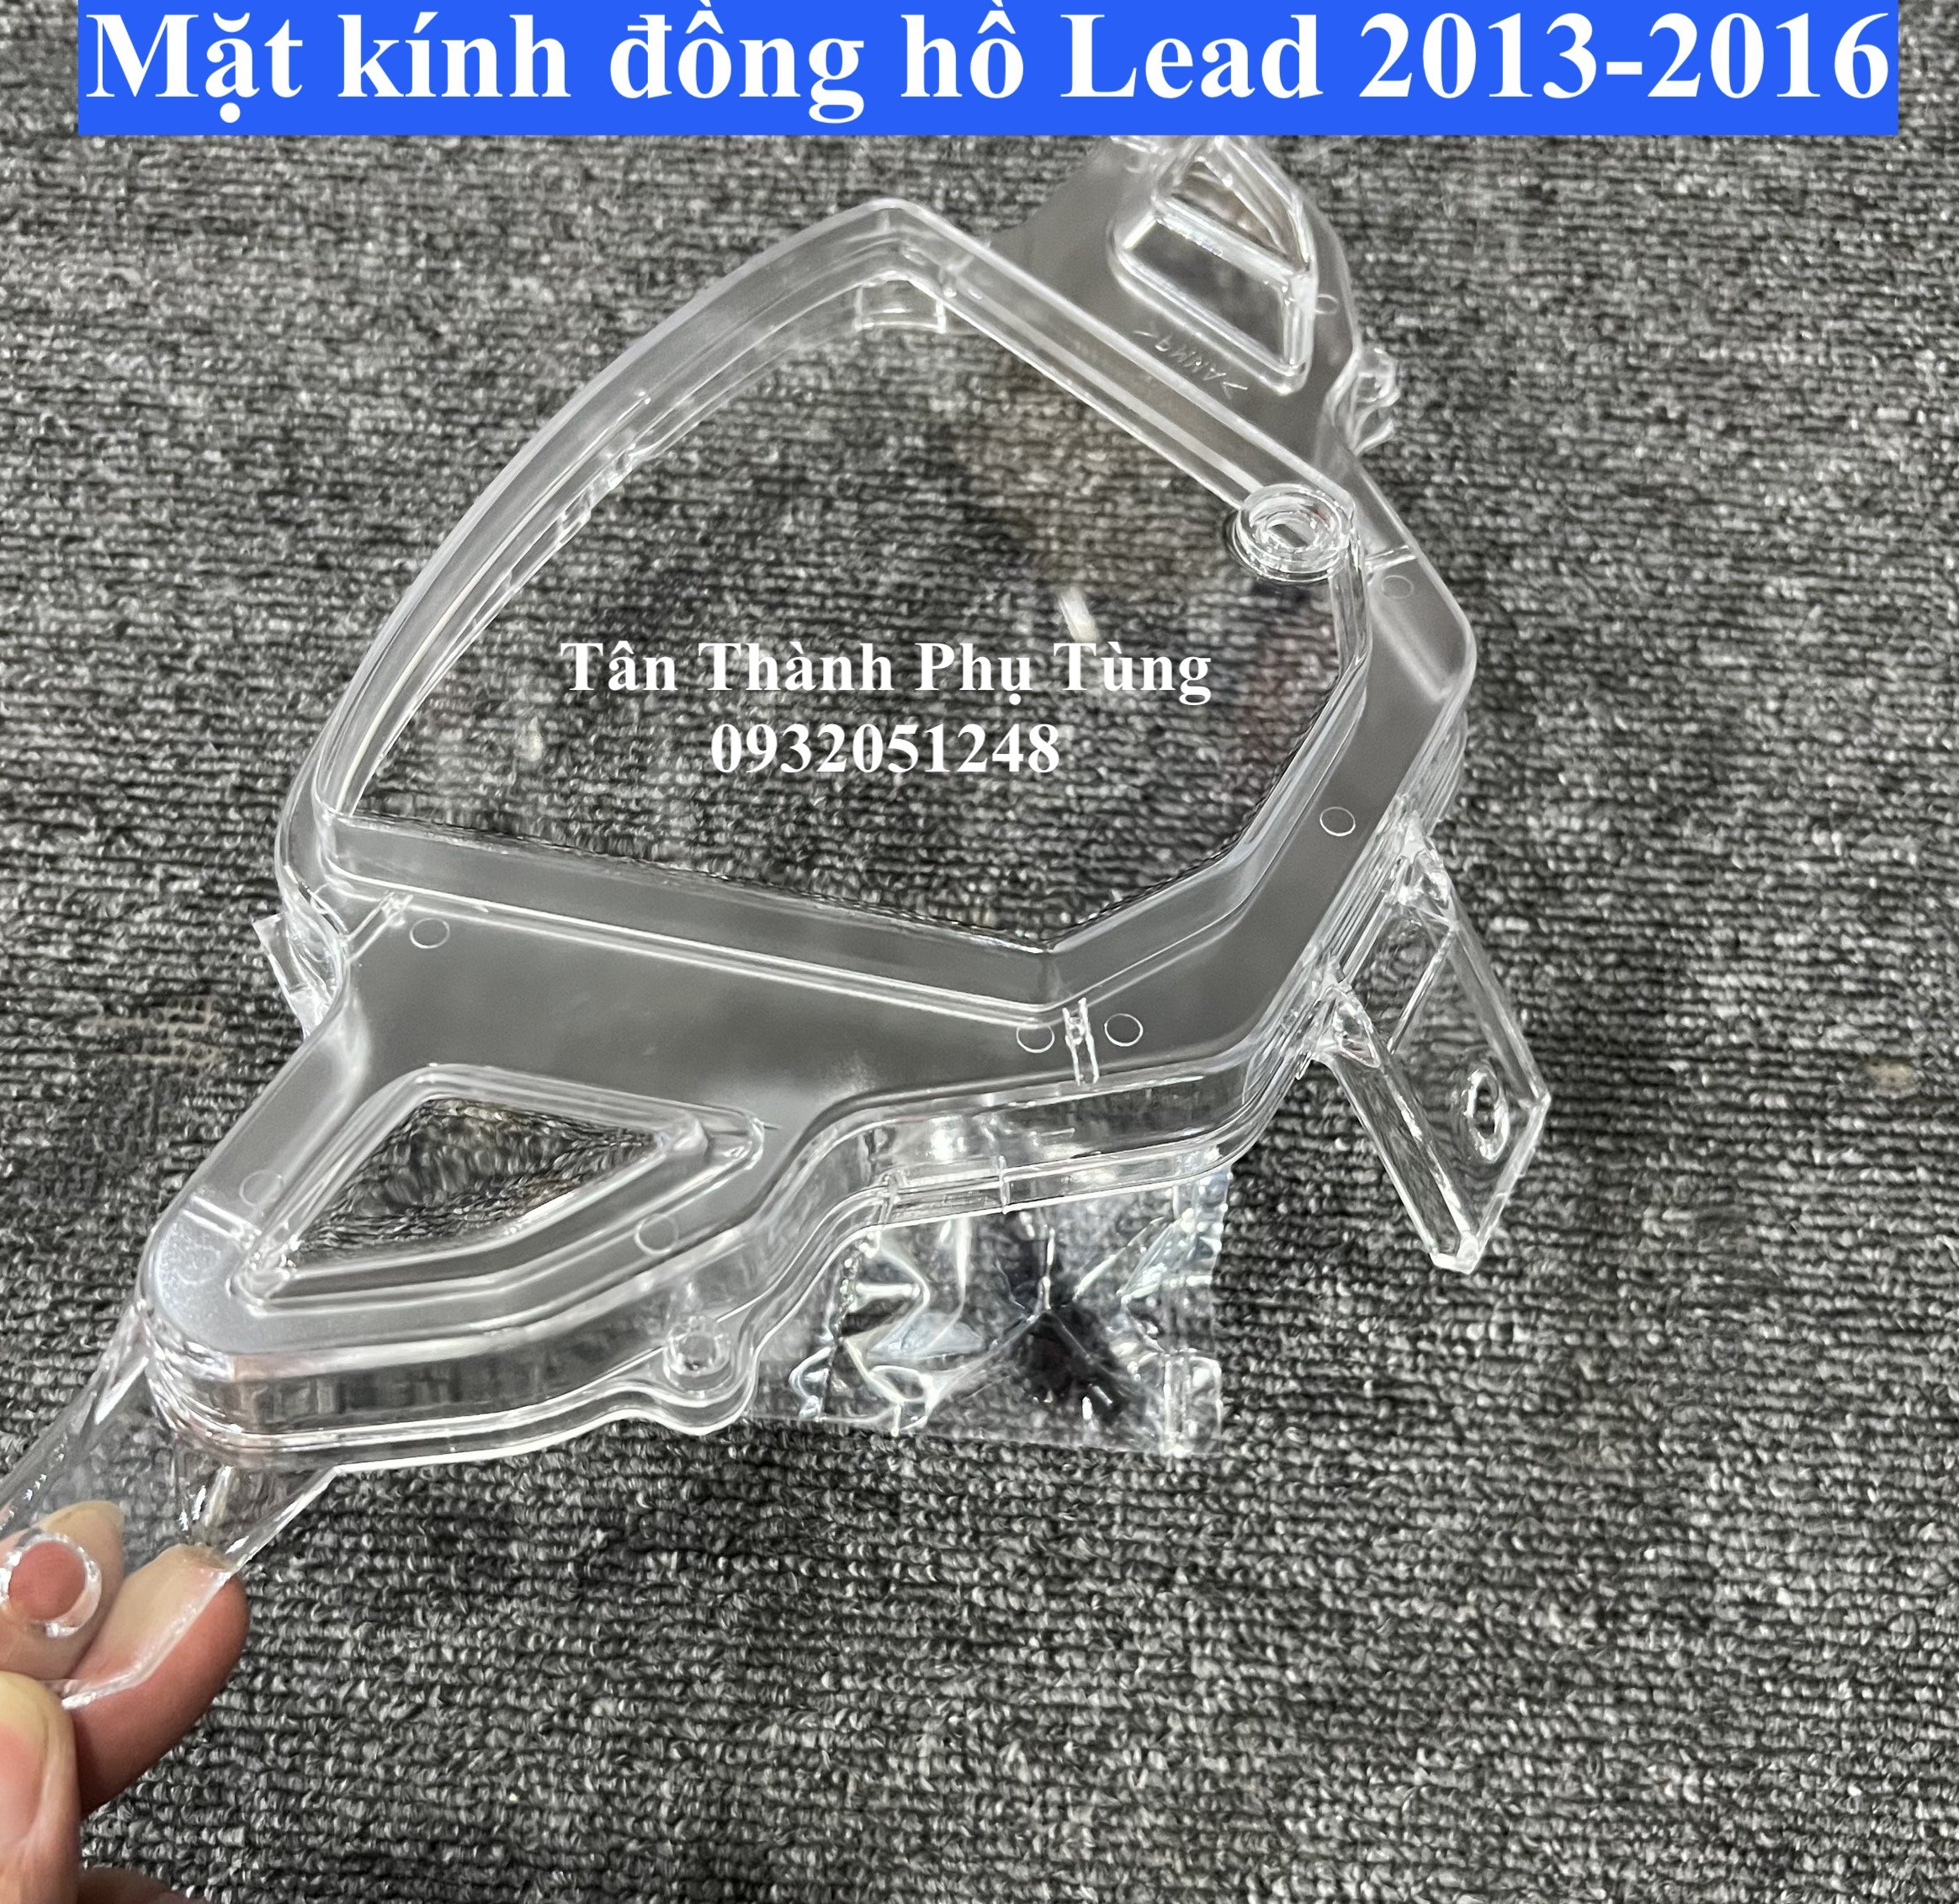 Mặt kính đồng hồ dành cho Lead 2013-2016